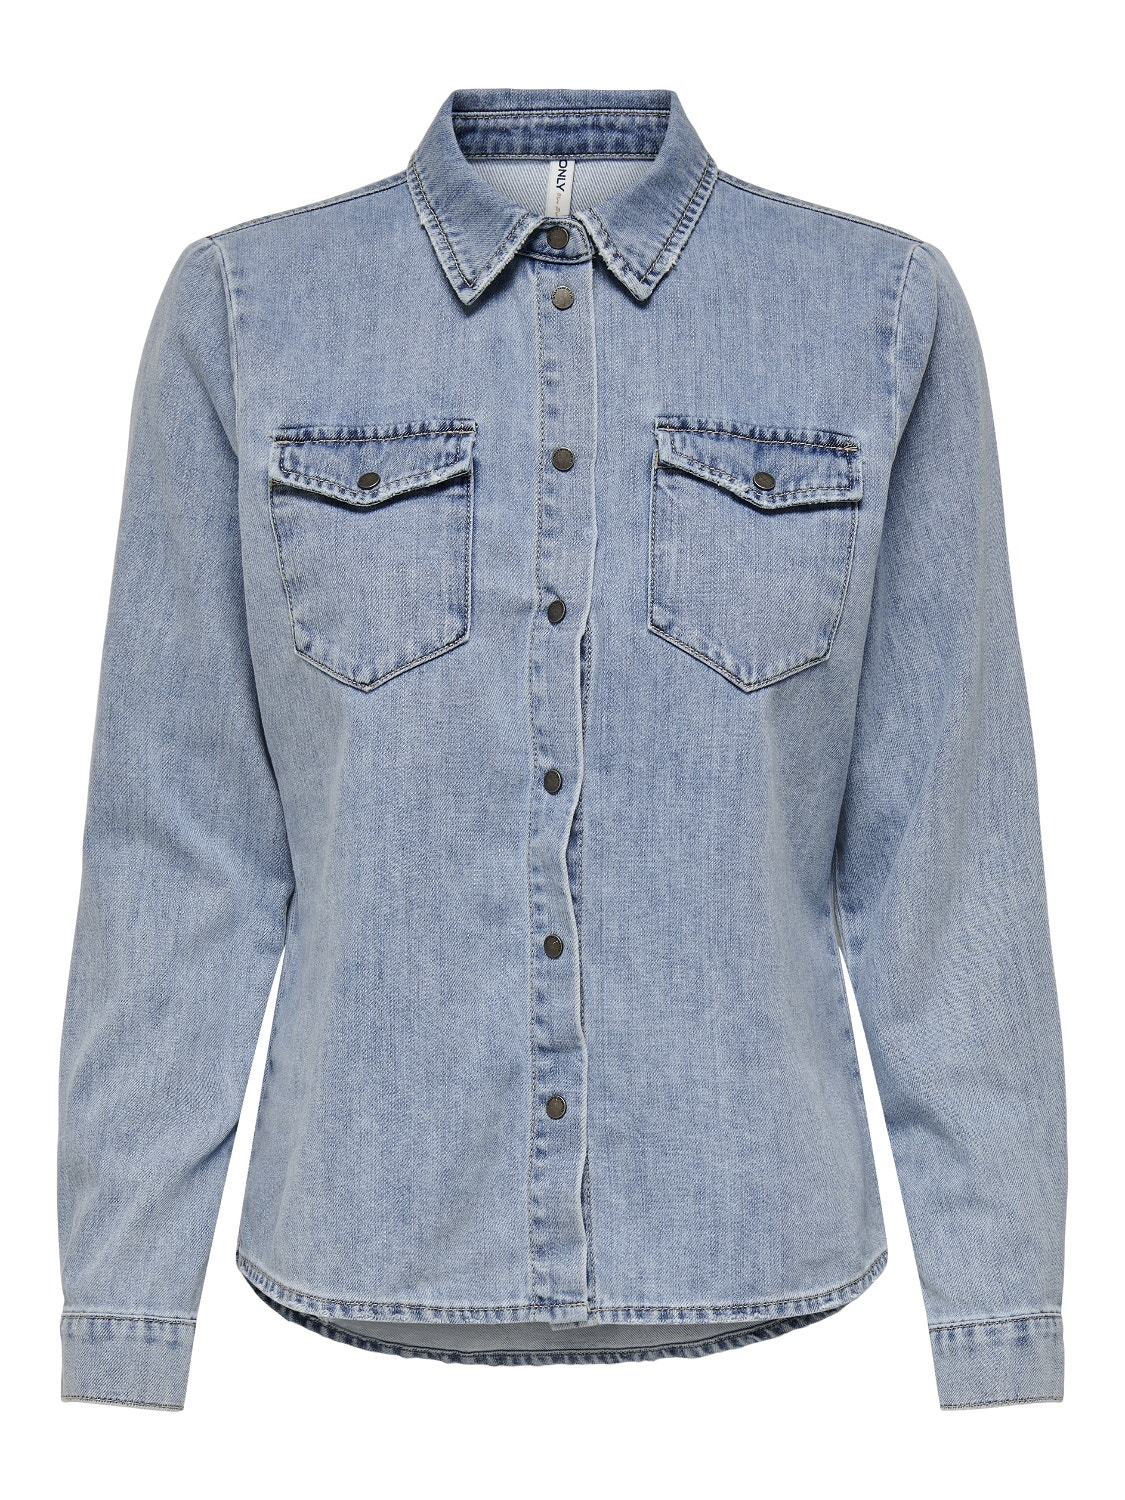 ONLY Standard Fit Shirt -Light Blue Denim - 15248583